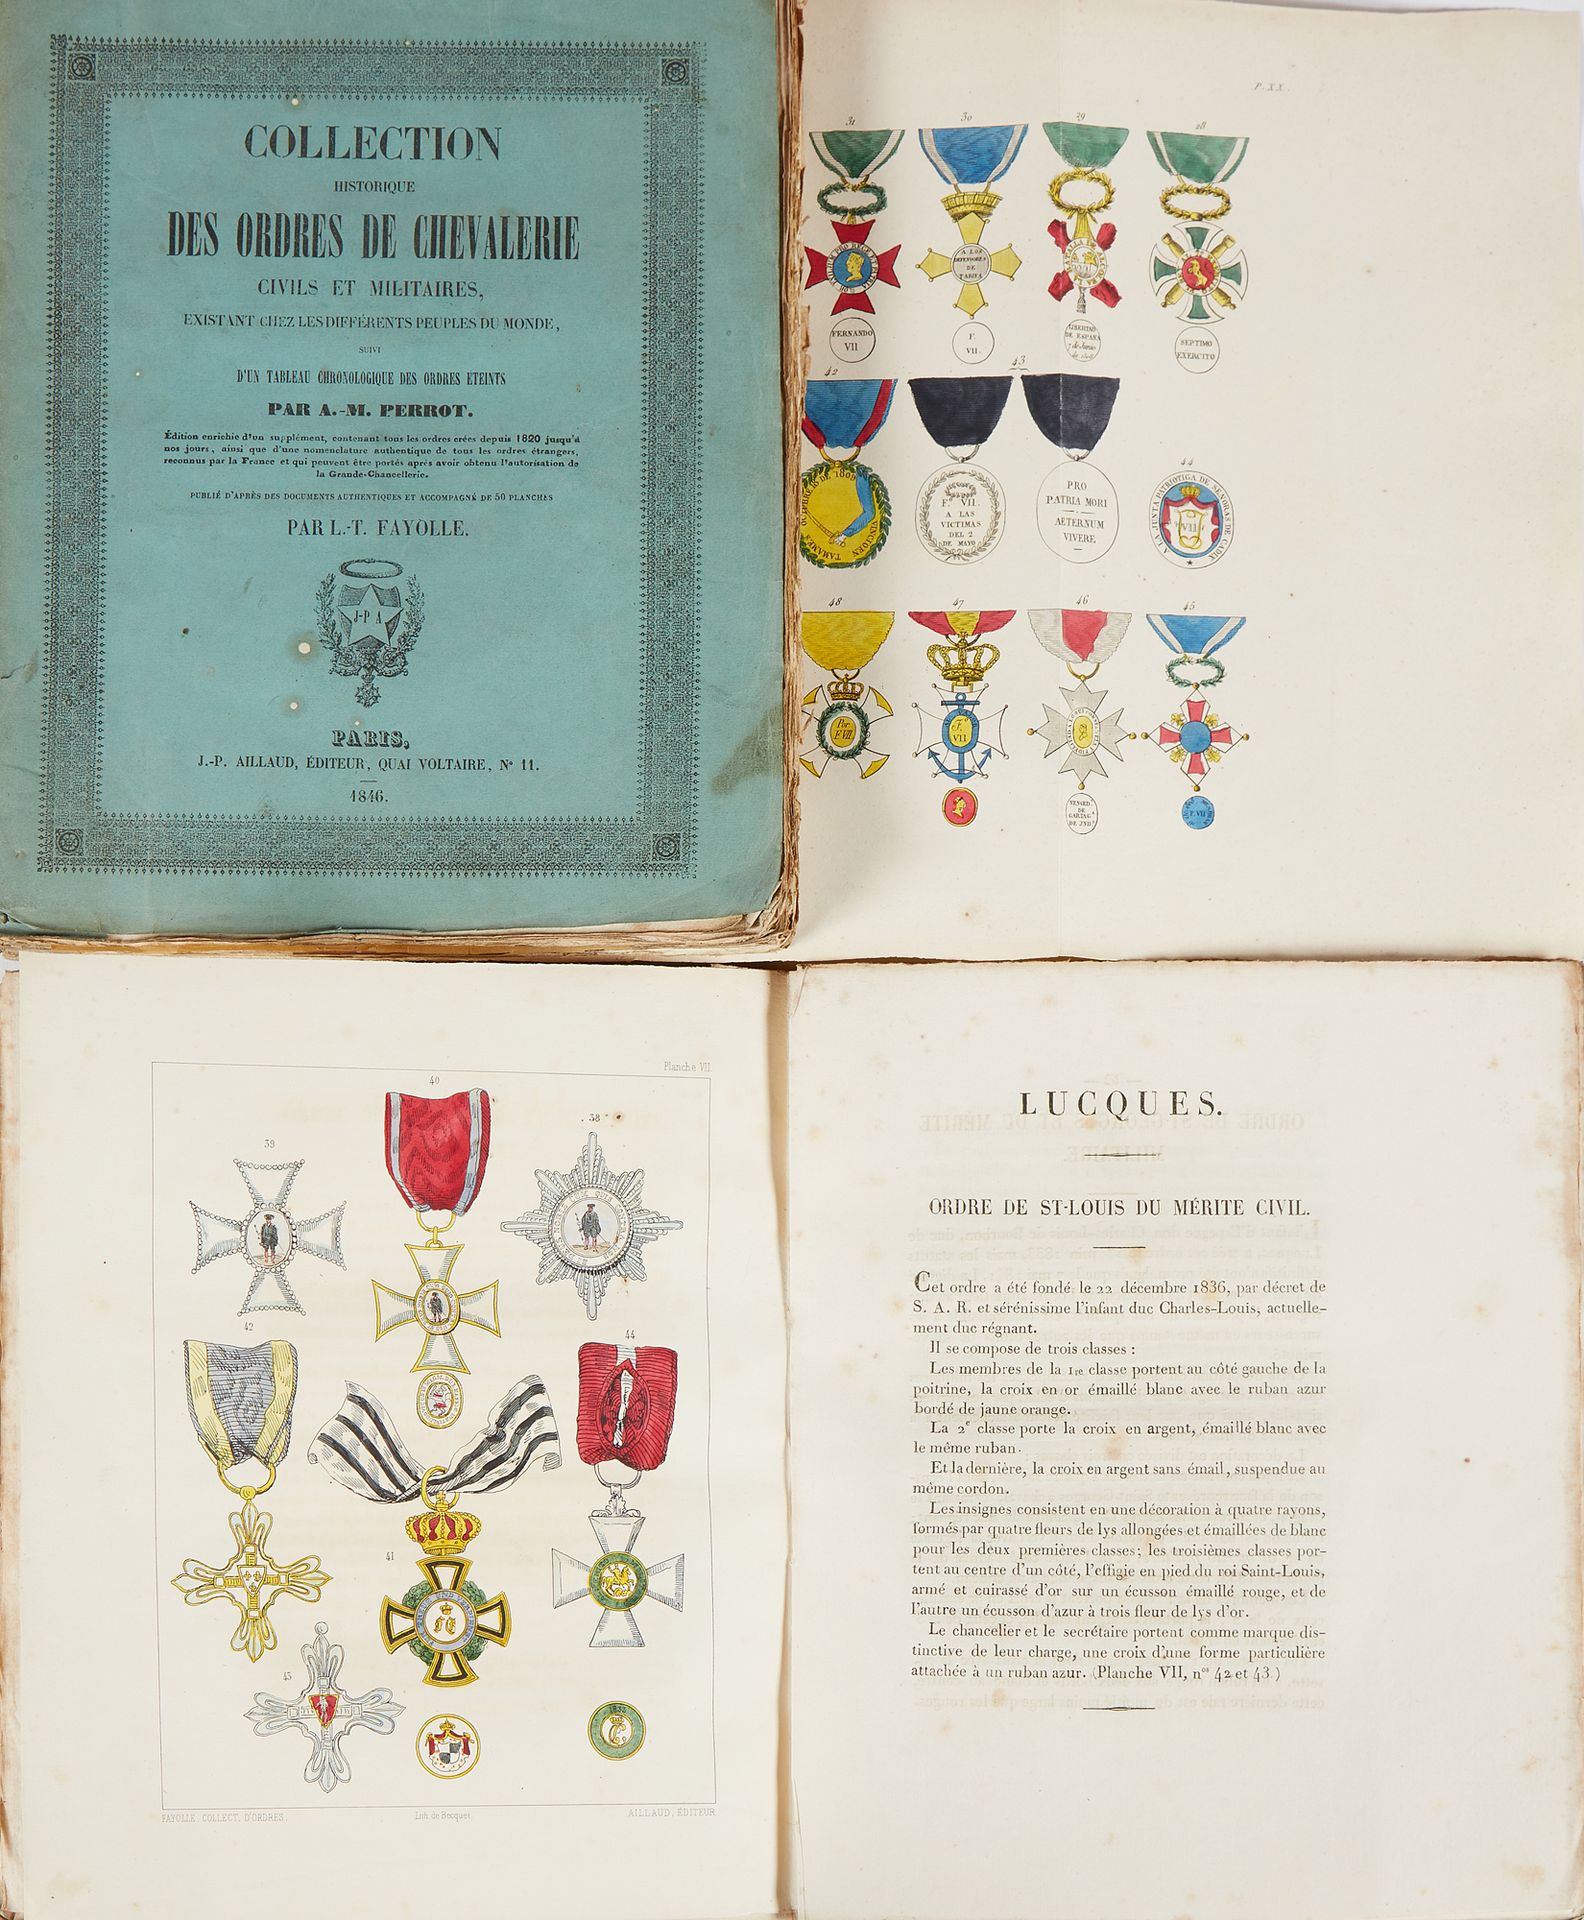 PERROT, A. -M. 收集了世界上不同民族的民间和军事骑士勋章的历史，并附有勋章的年代表。巴黎，J.P.Aillaud，1846年，2卷，4页。平装本，&hellip;